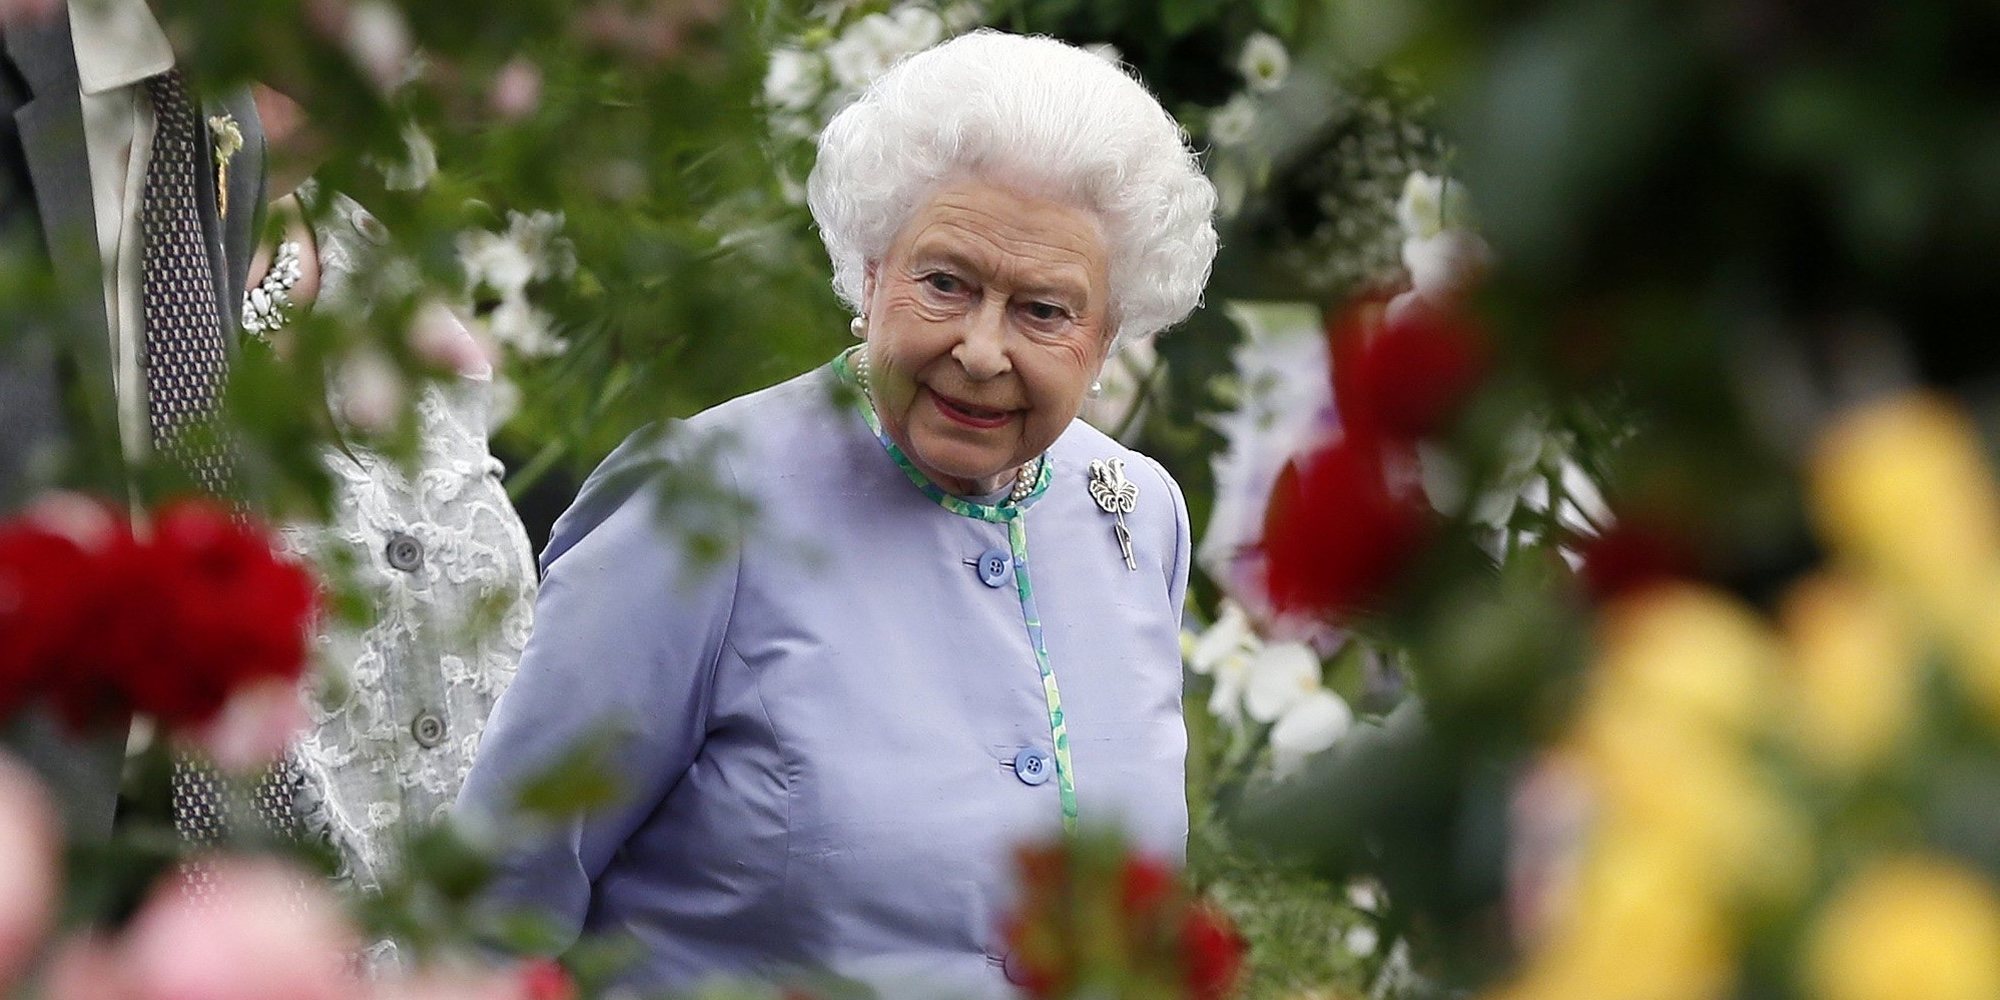 La Reina Isabel bromea sobre el cambio climático: "Yo ya no estaré aquí para verlo"